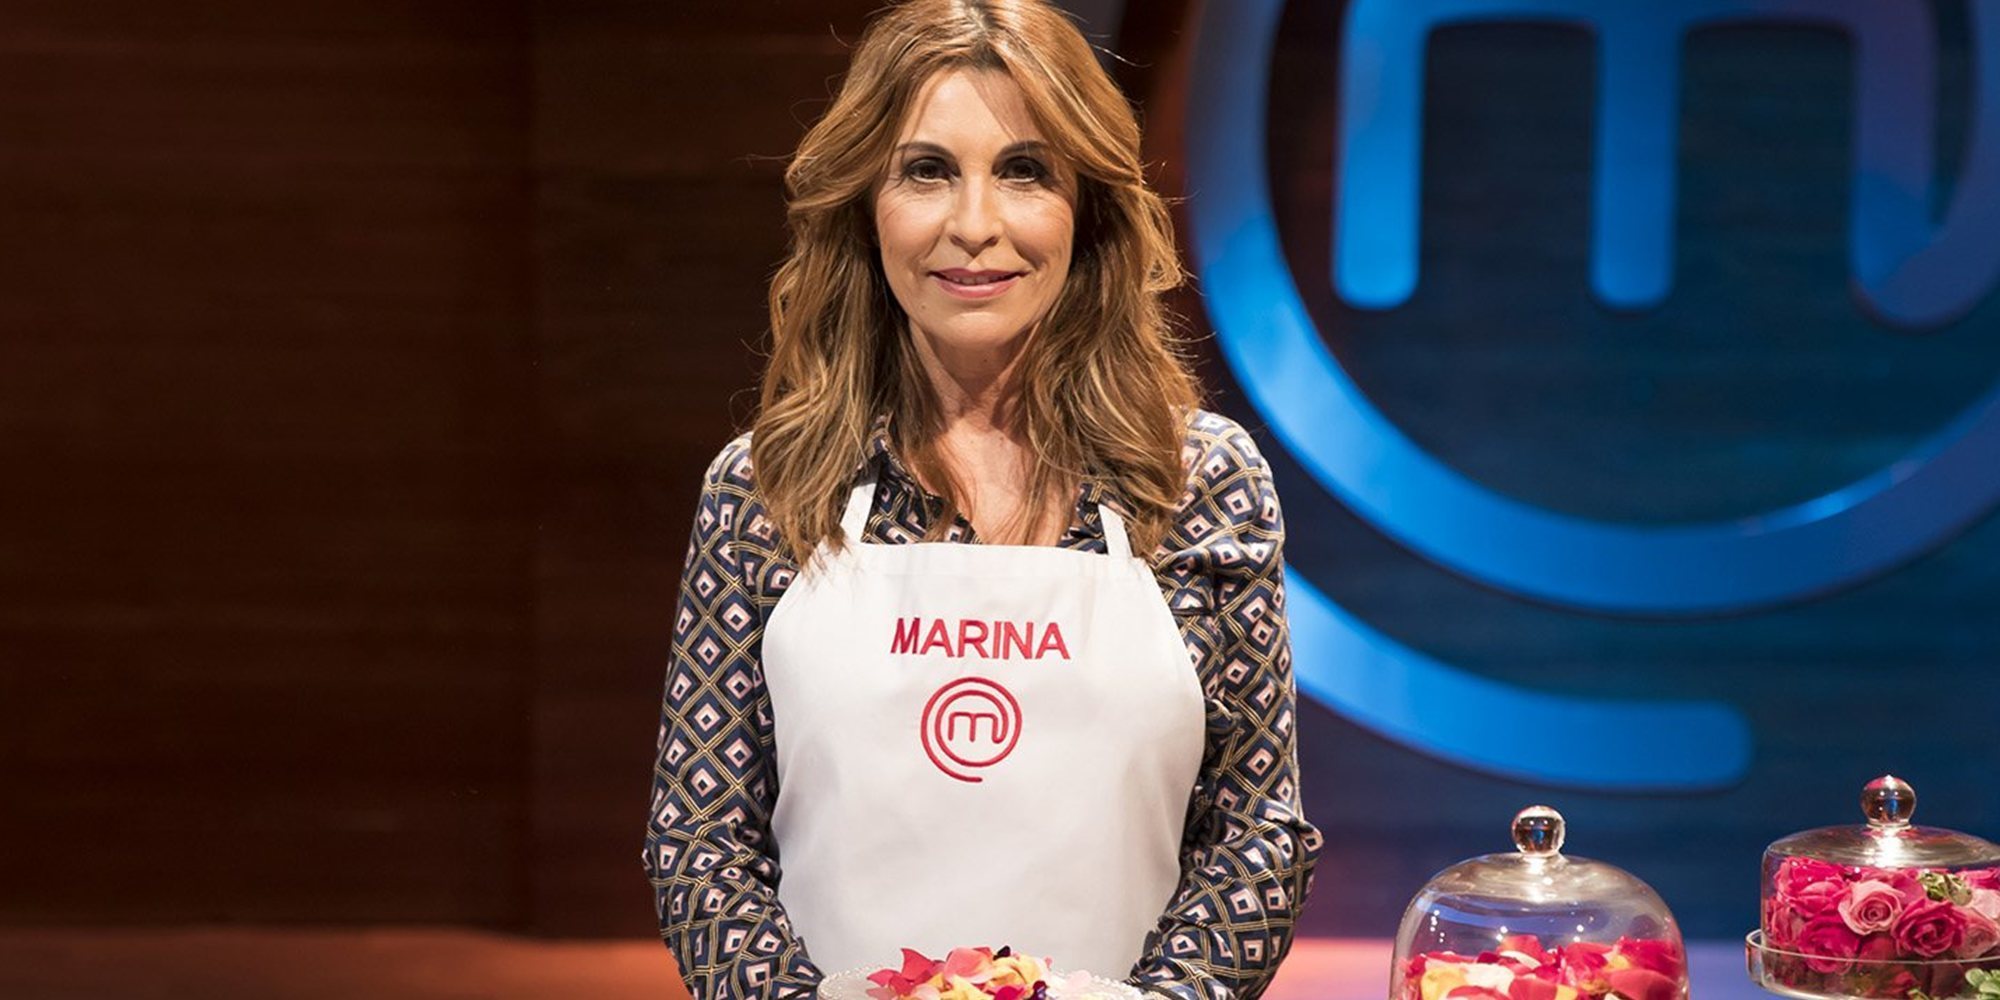 Jordi Cruz arremete contra Marina en 'MasterChef 6' por errores en el cocinado: "Tú ya has empezado a irte"